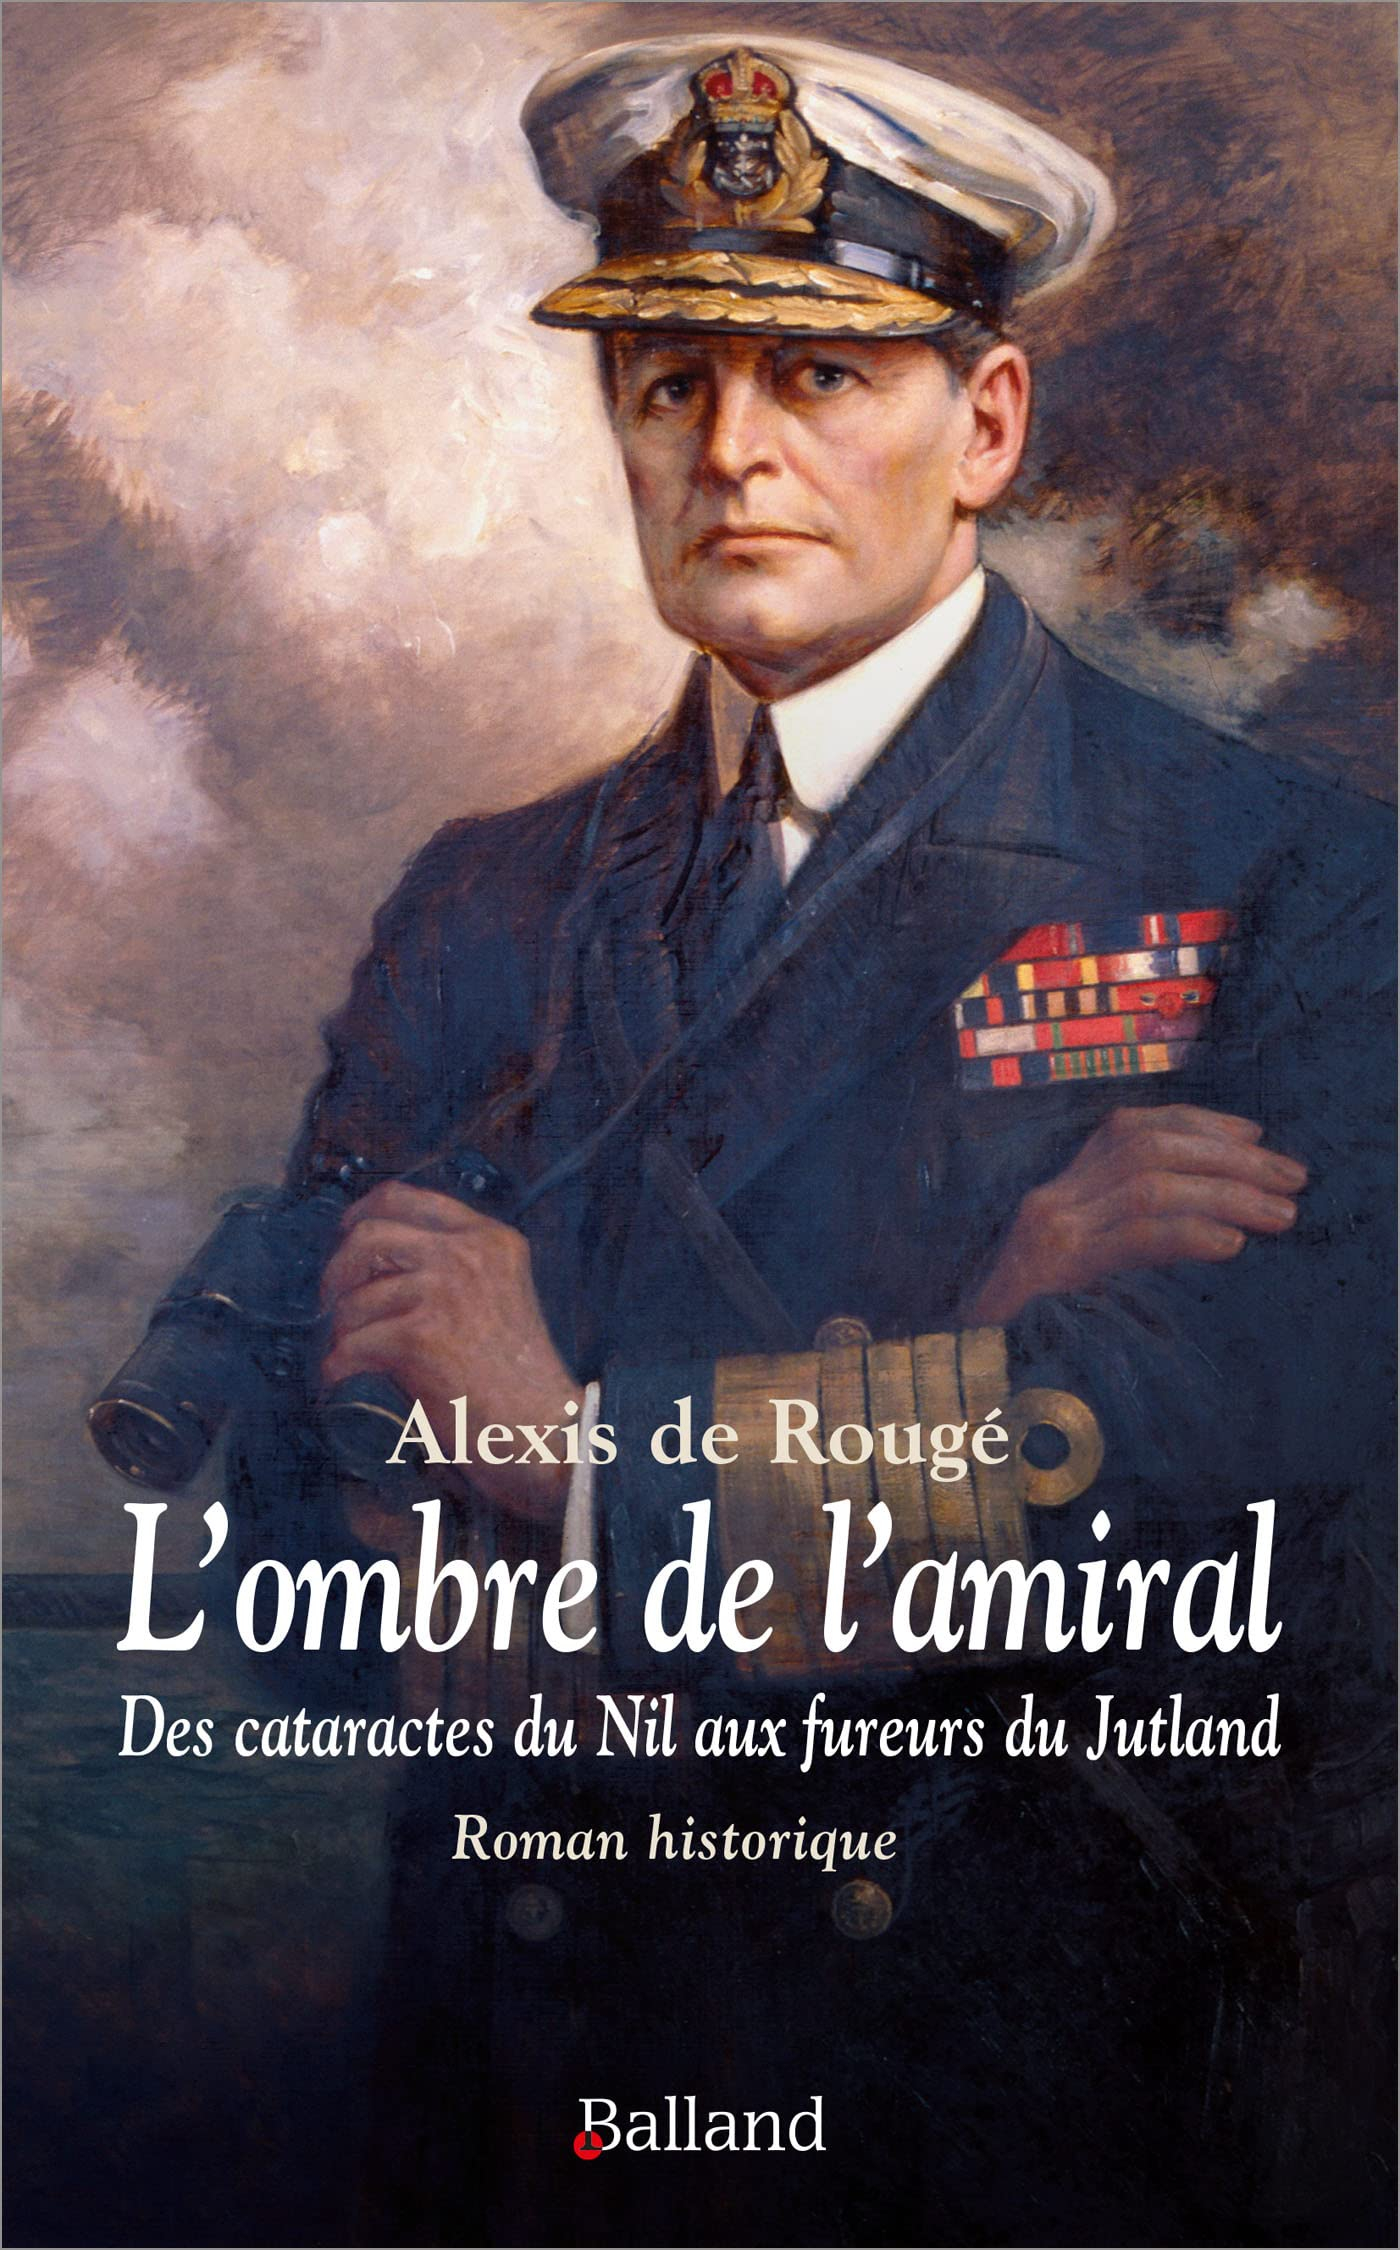 L'ombre de l'amiral : des cataractes du Nil aux fureurs du Jutland, chronique d'une amitié improbabl